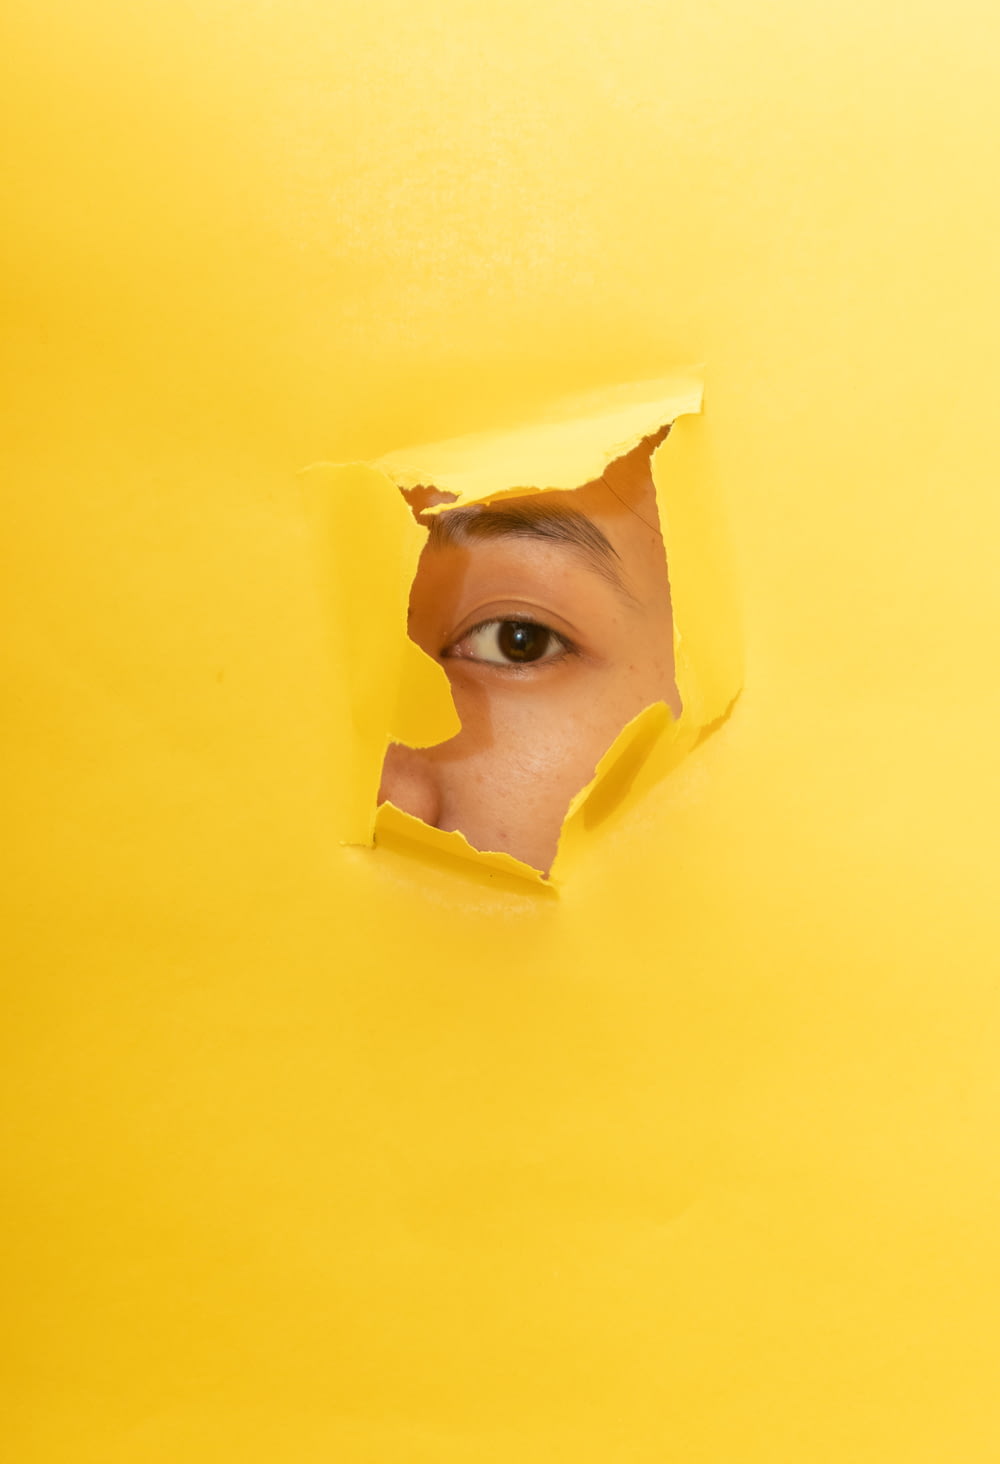 Masque facial homme en jaune